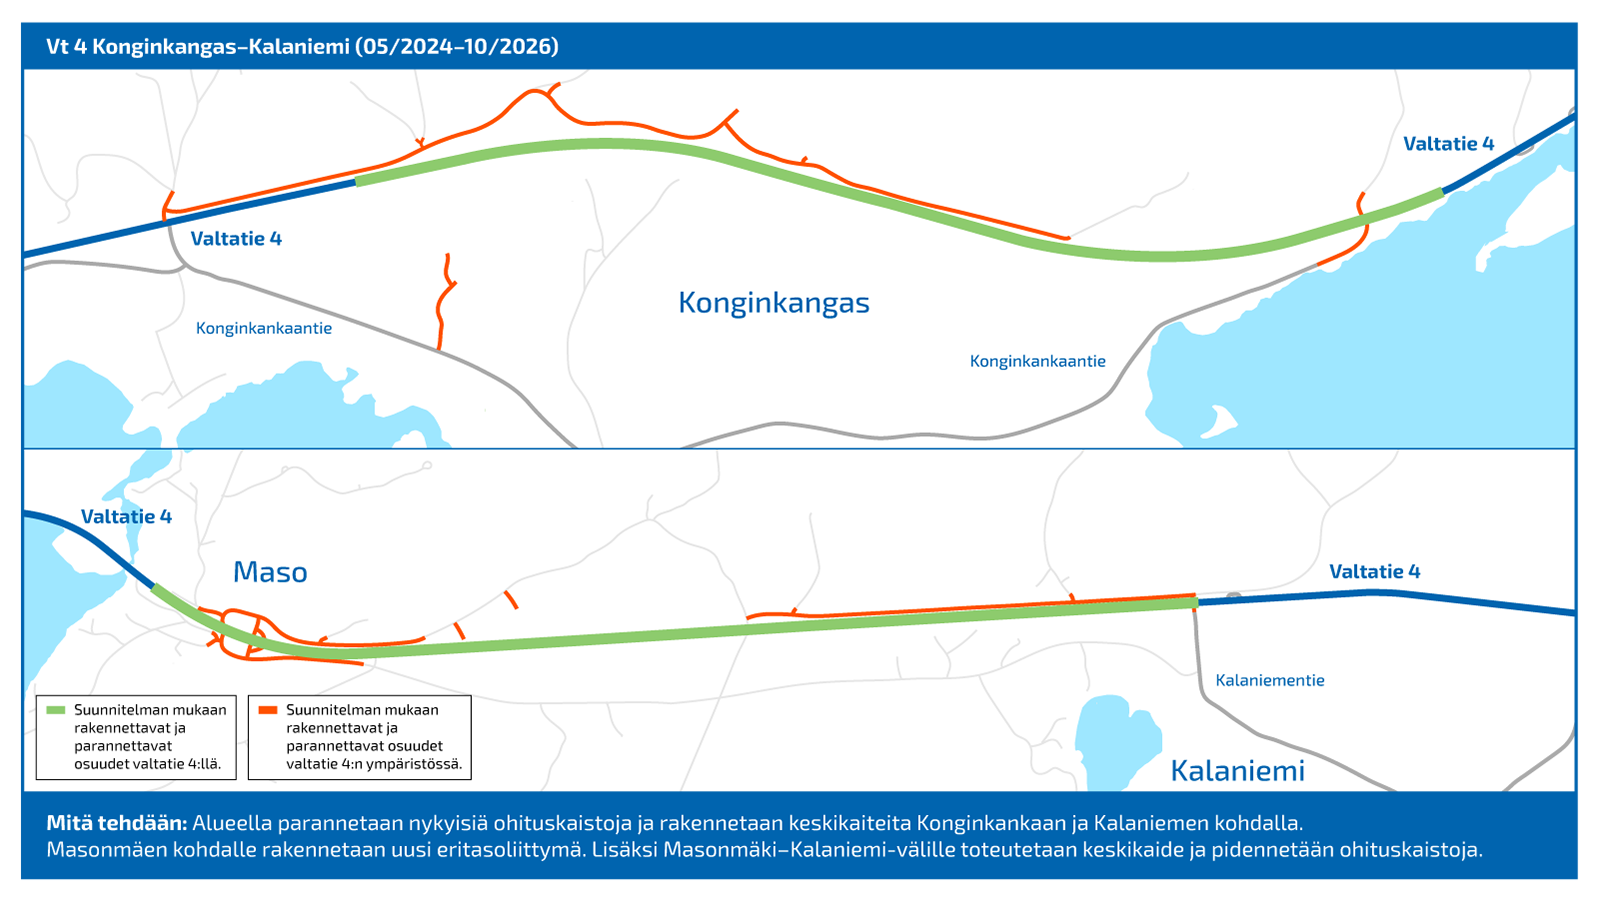 Karttagraafi Äänekoski-Viitasaari ohituskaistat hankkeen tietöistä Konginkankaan kohdalta